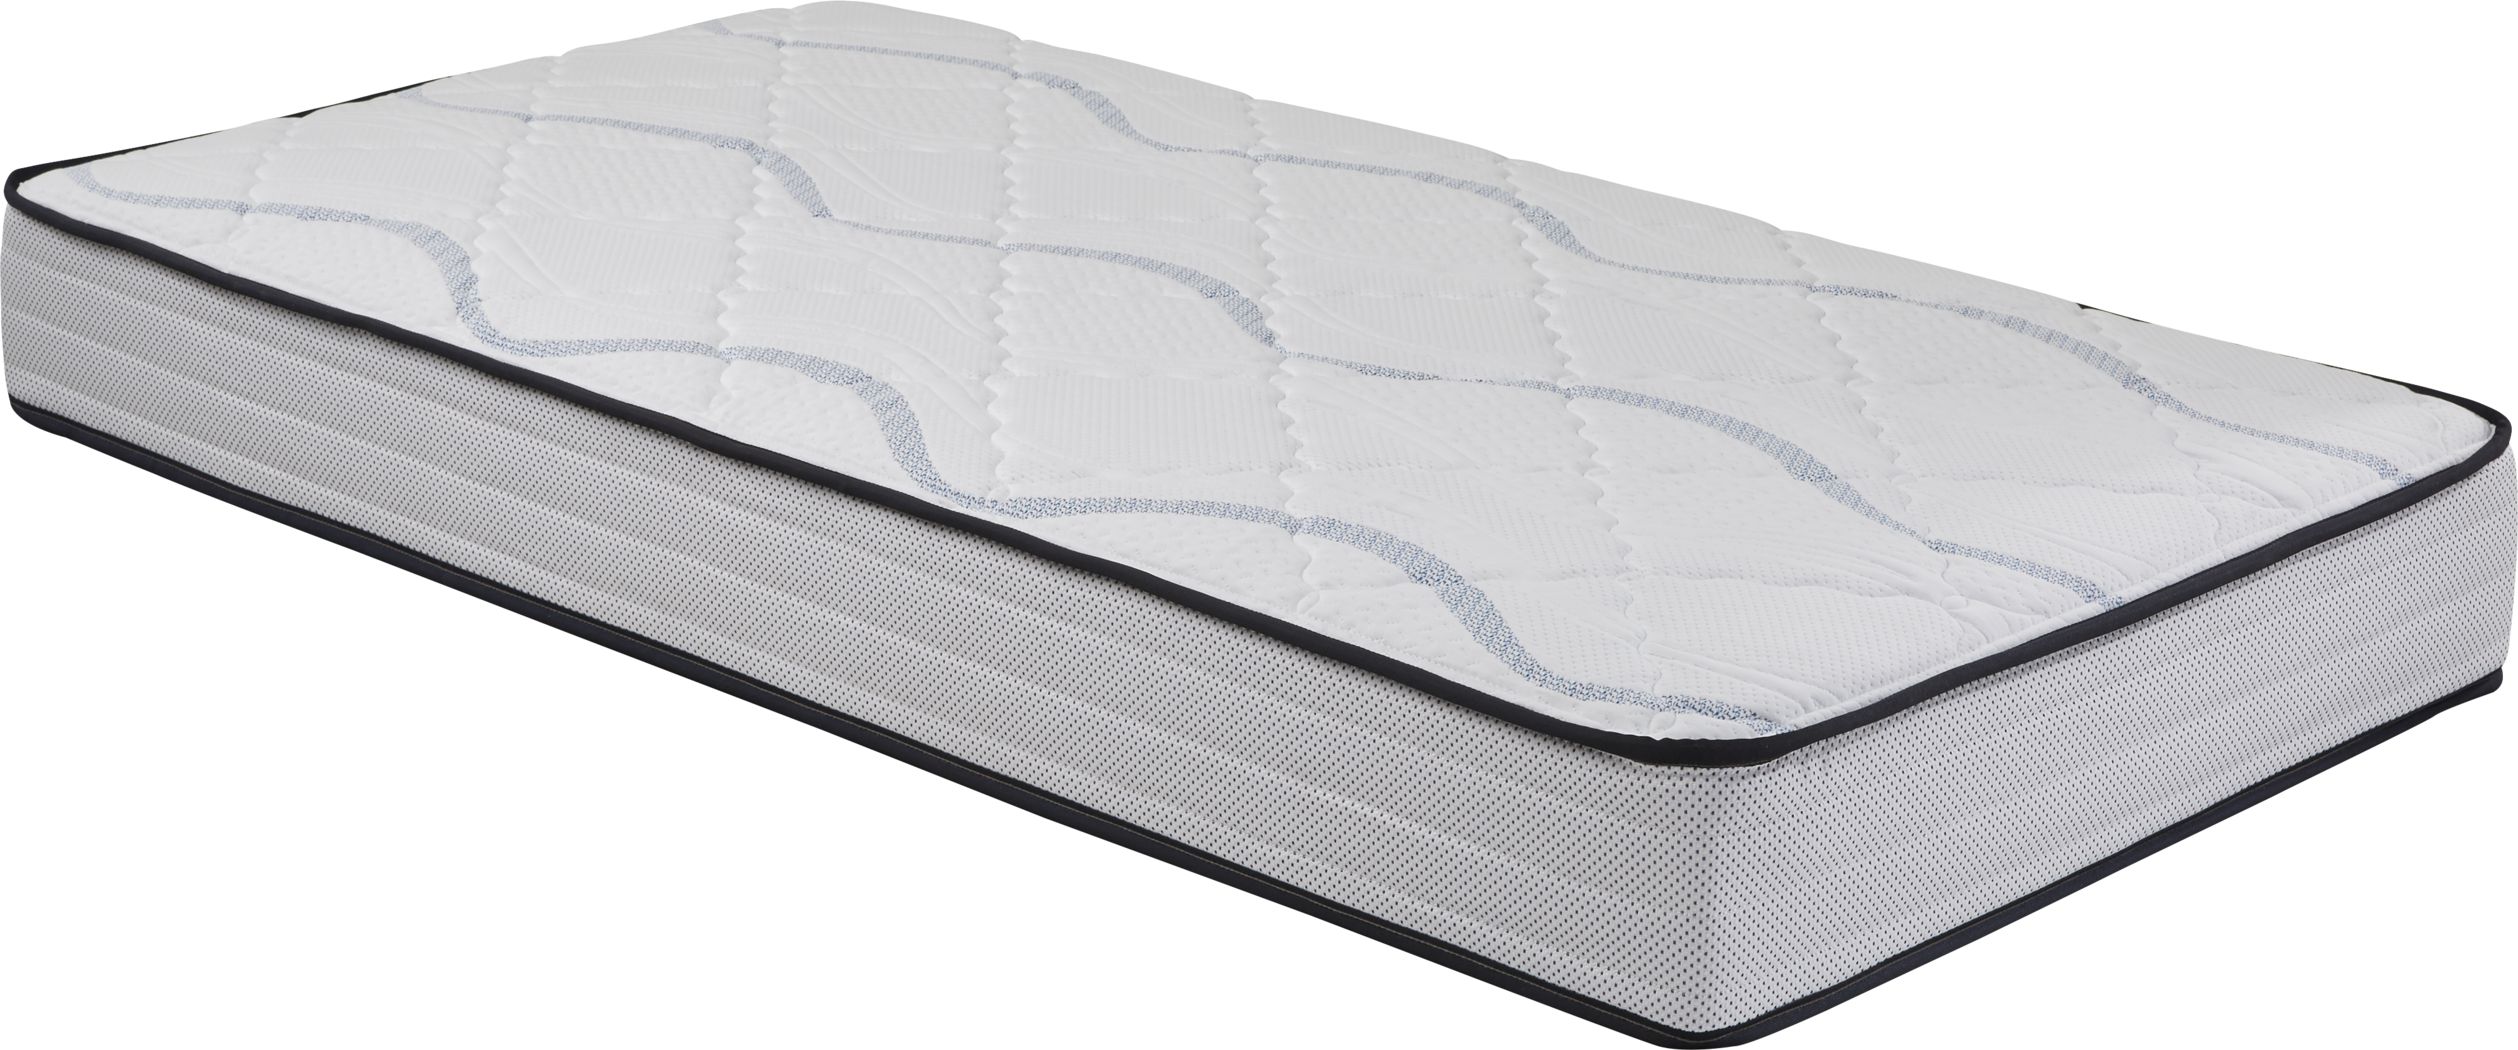 meistervik foam mattress twin